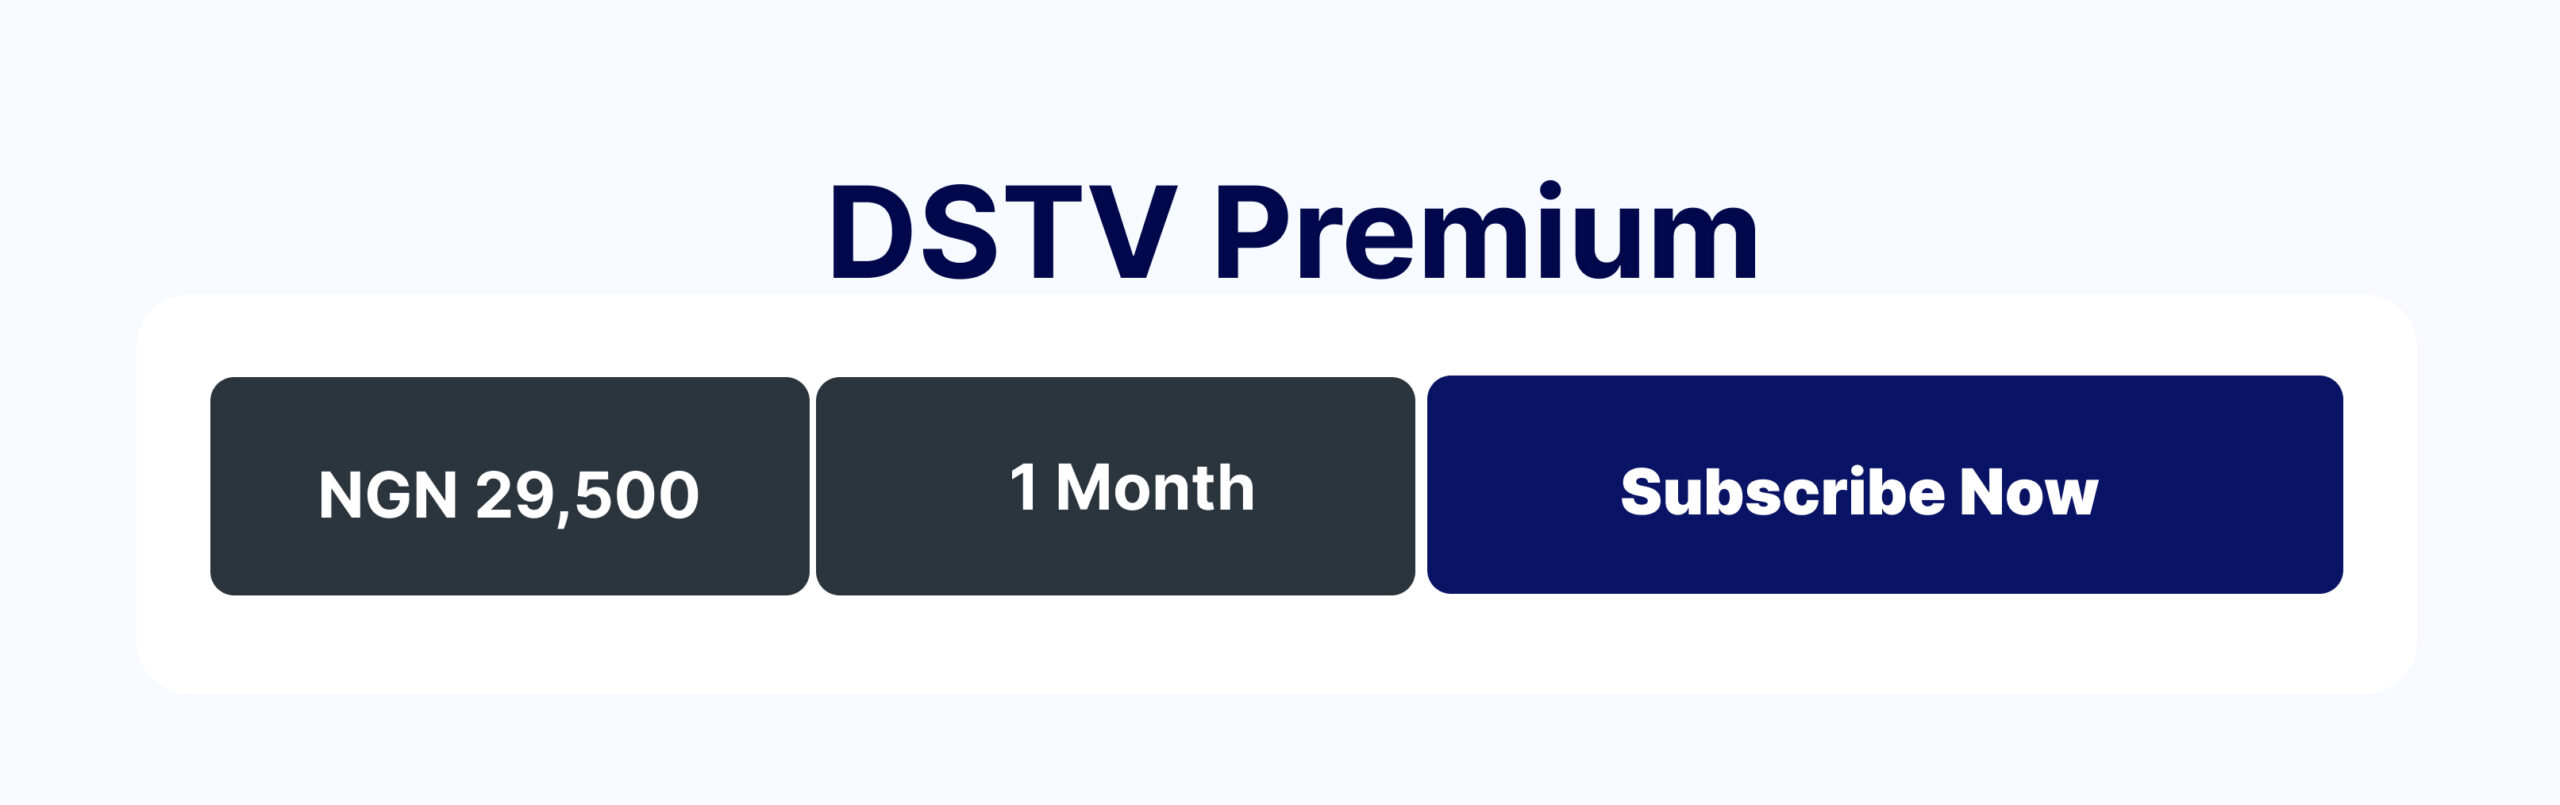 DStv premium